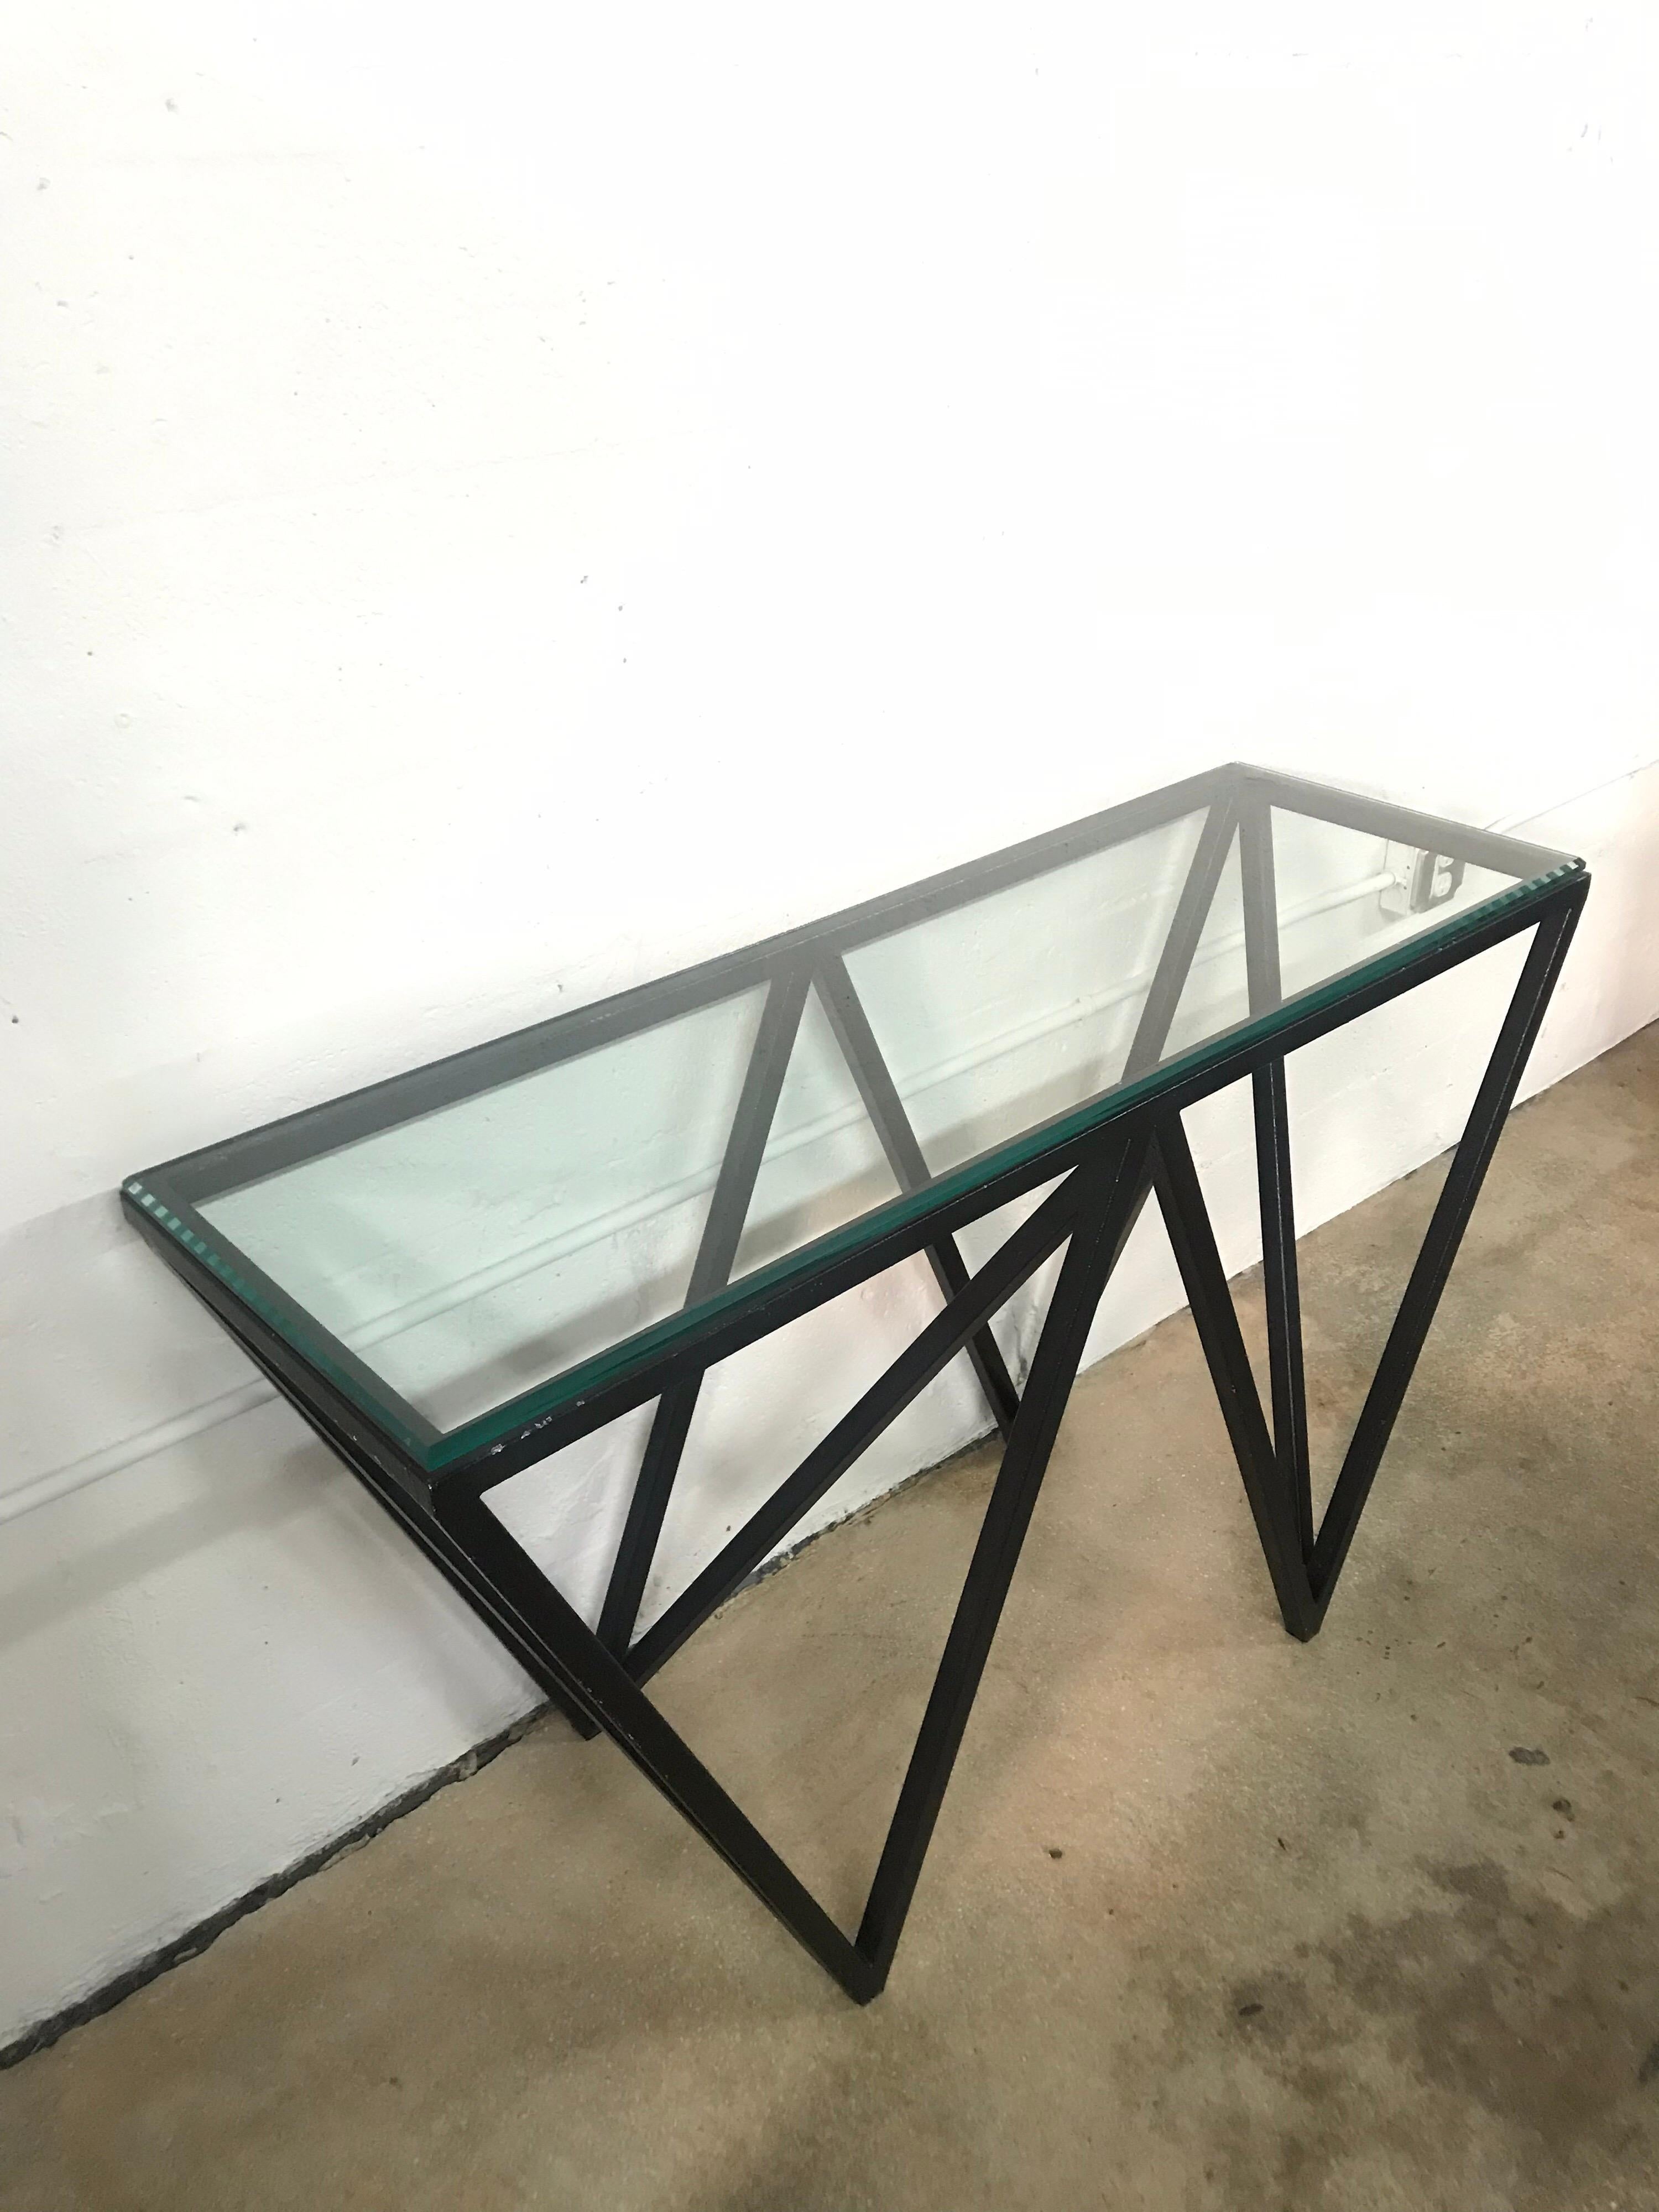 Moderner architektonischer Konsolen- oder Sofatisch aus schwarzem Stahl und Glas (Postmoderne)